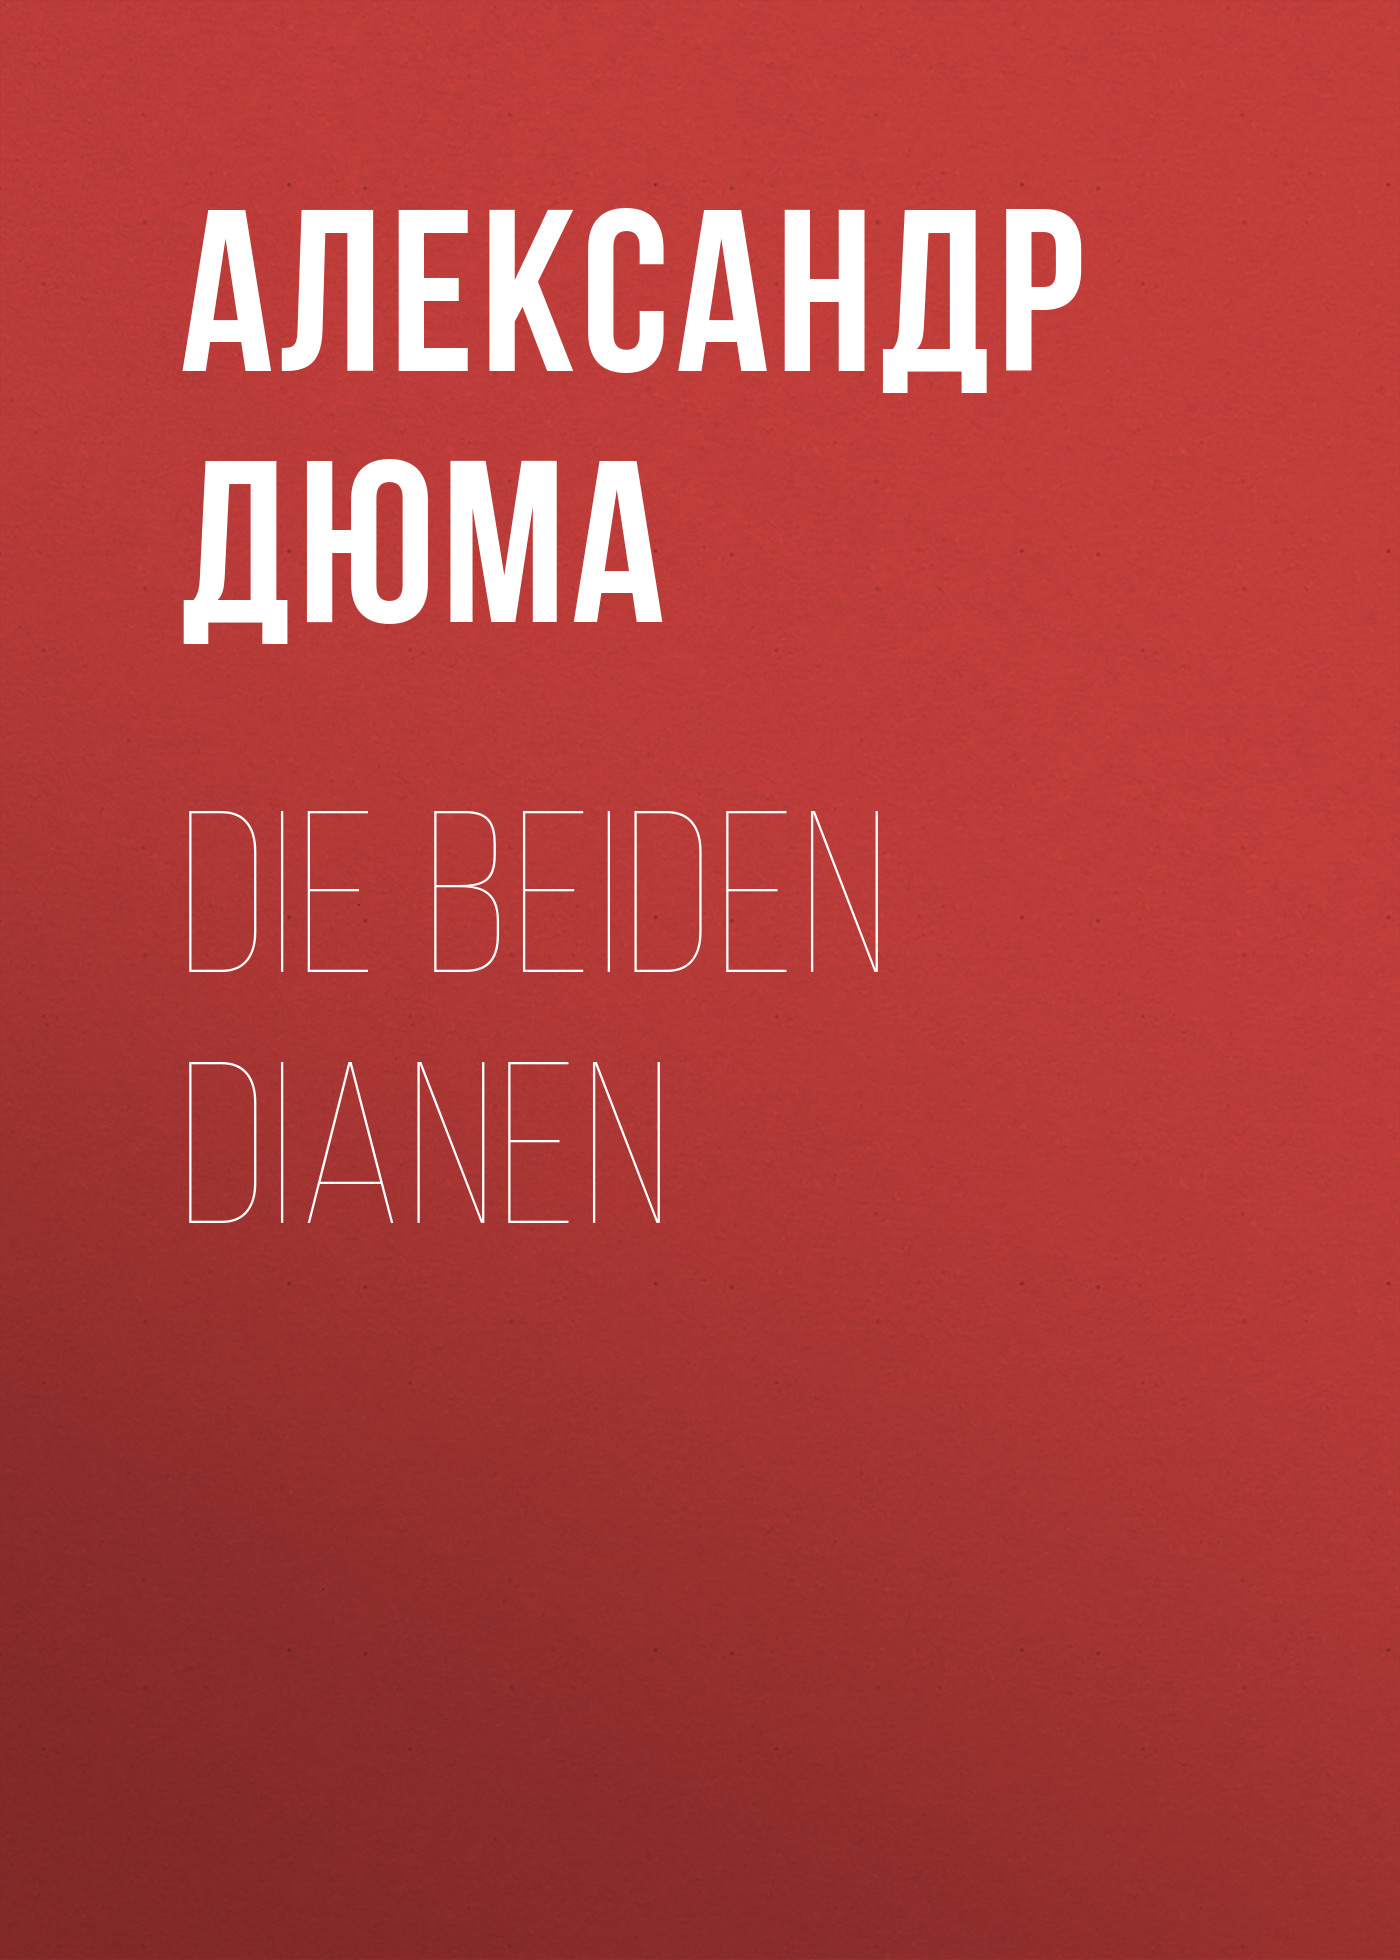 Книга Die beiden Dianen из серии , созданная Alexandre Dumas der Ältere, может относится к жанру Зарубежная классика. Стоимость электронной книги Die beiden Dianen с идентификатором 48632604 составляет 0 руб.